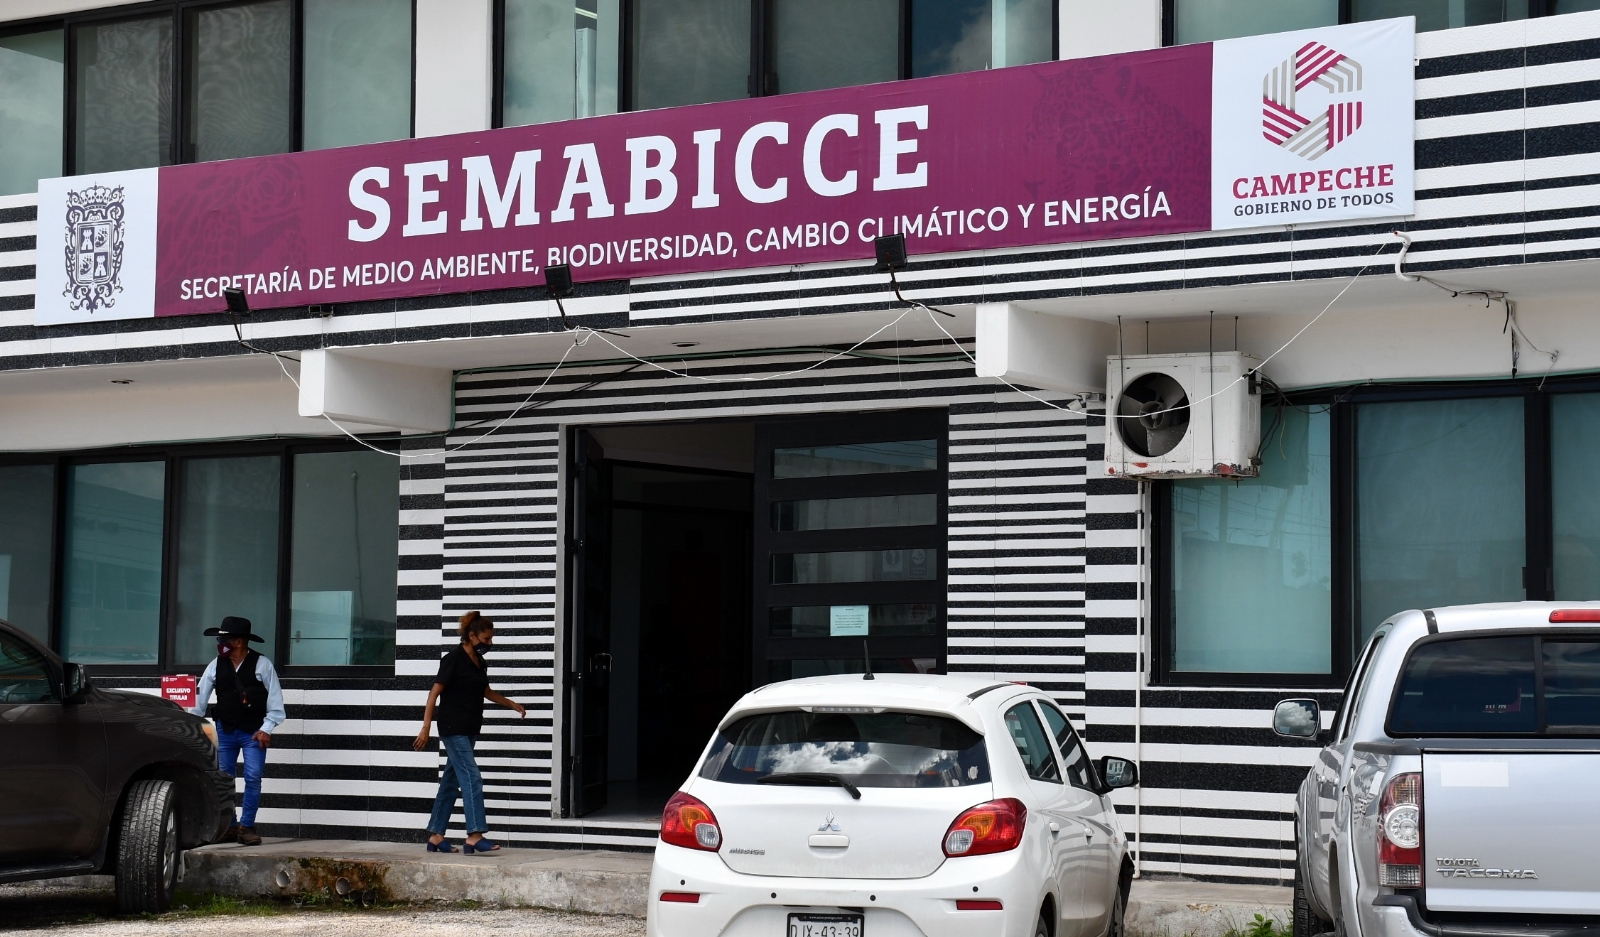 72 funcionarios de Campeche, investigados por delitos cometidos en su cargo: SESNSP